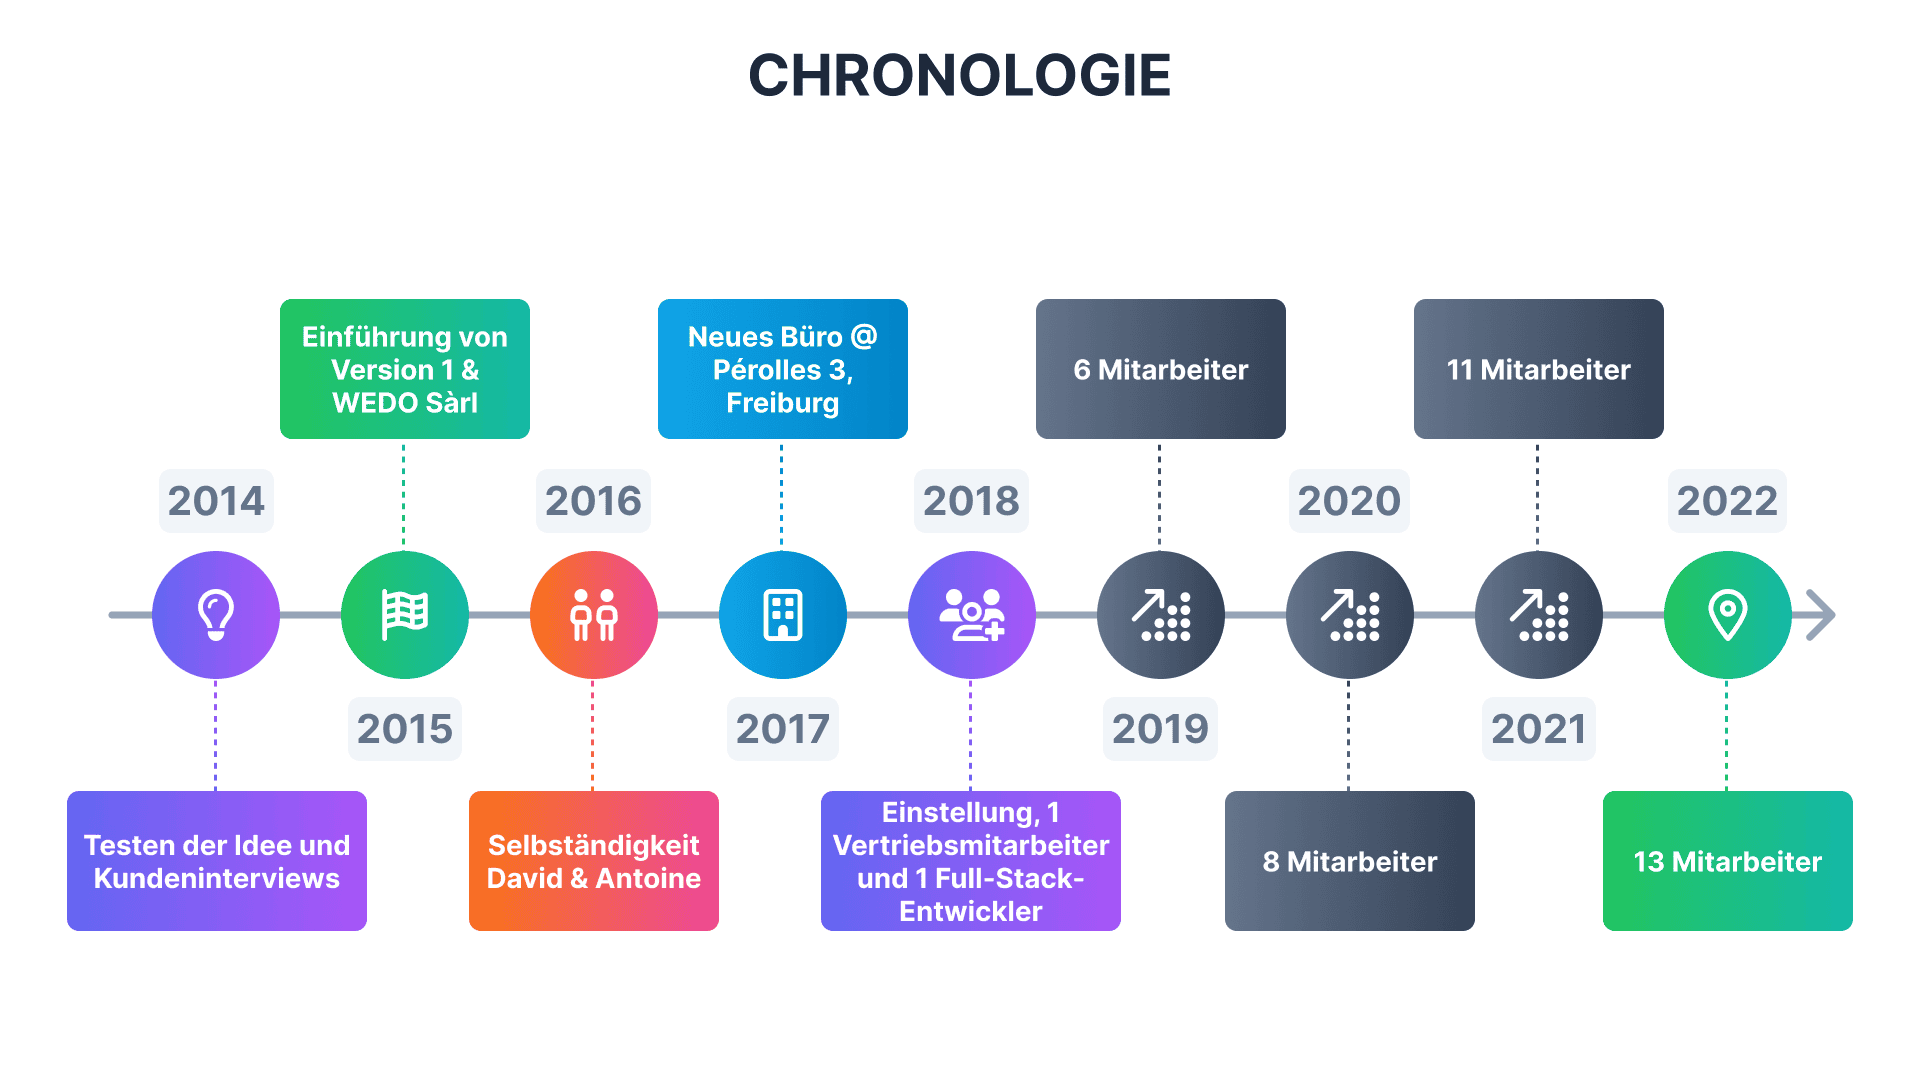 Chronology_de.png